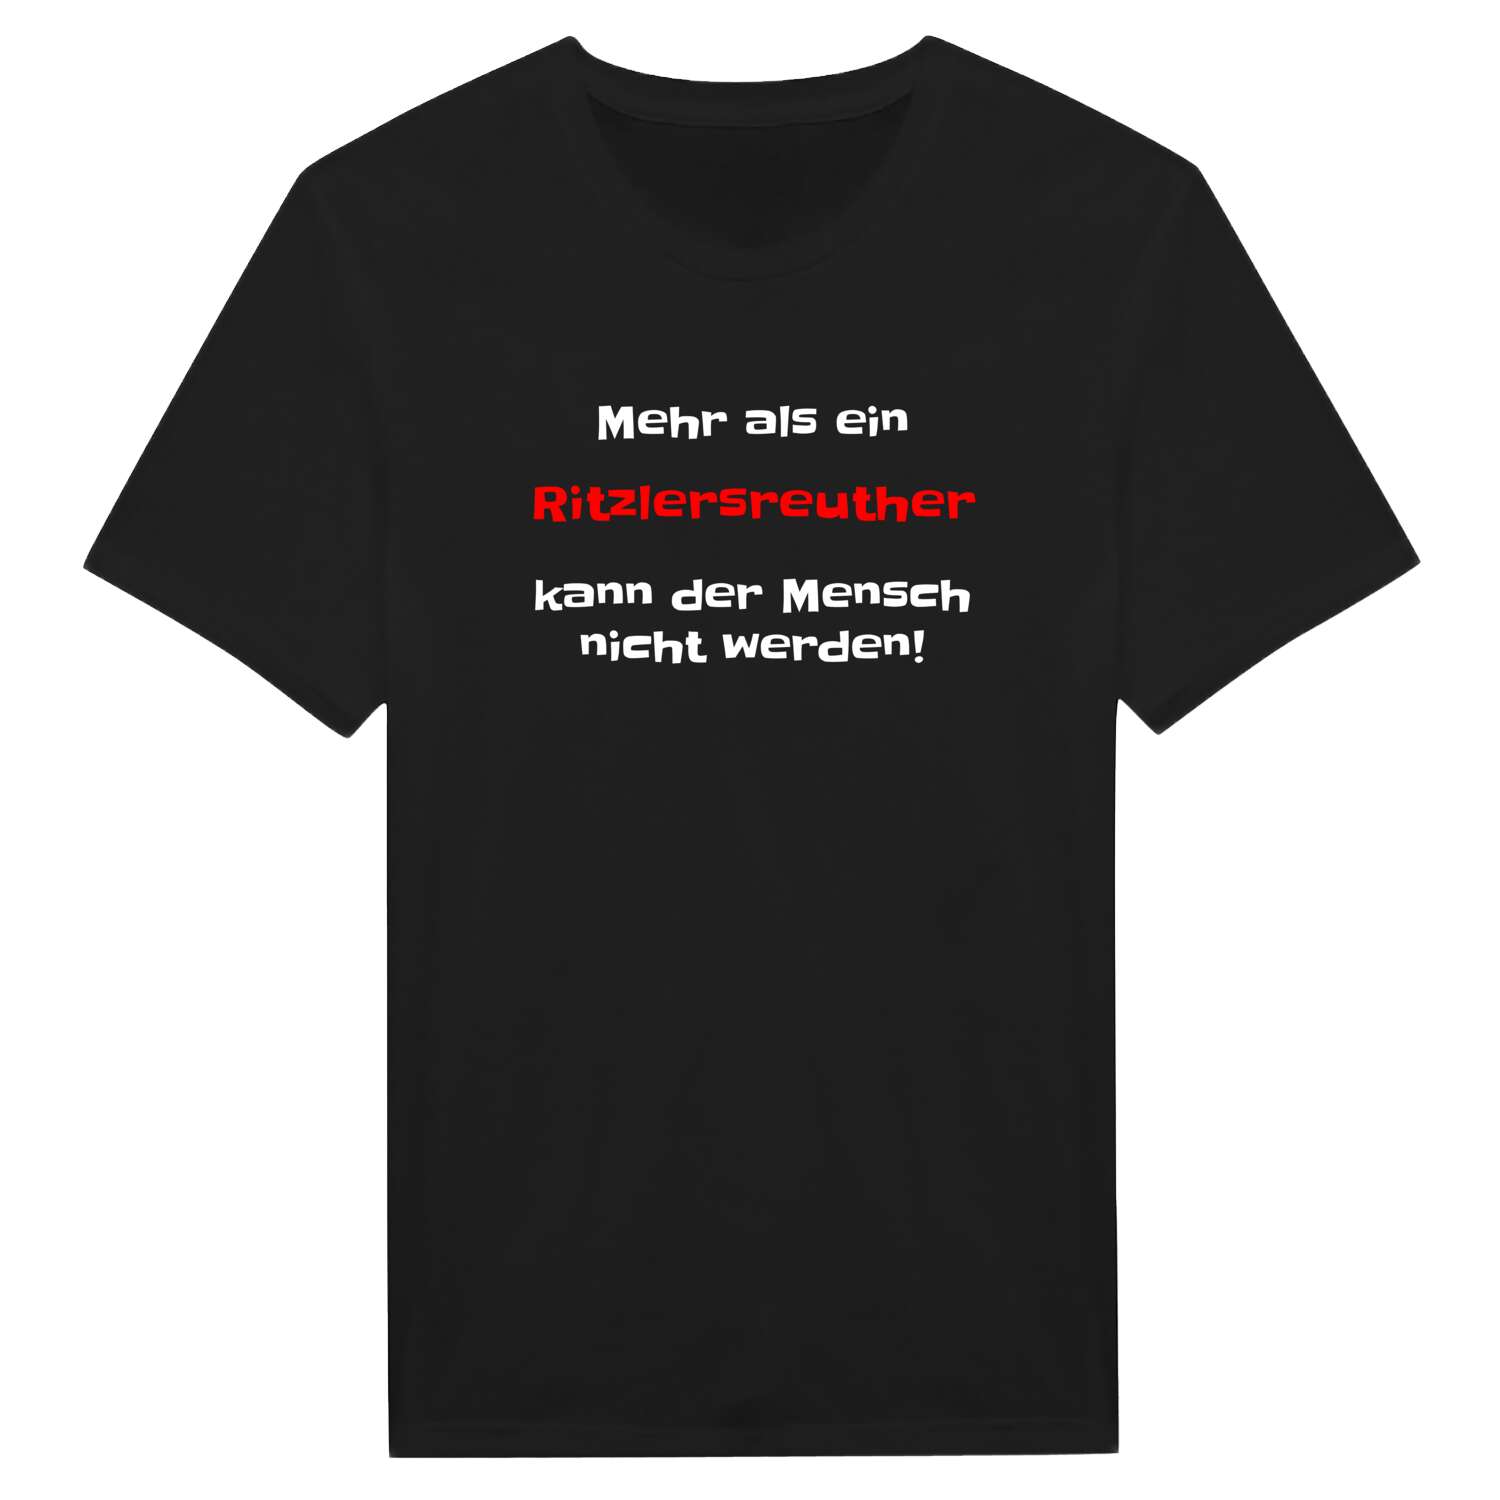 Ritzlersreuth T-Shirt »Mehr als ein«